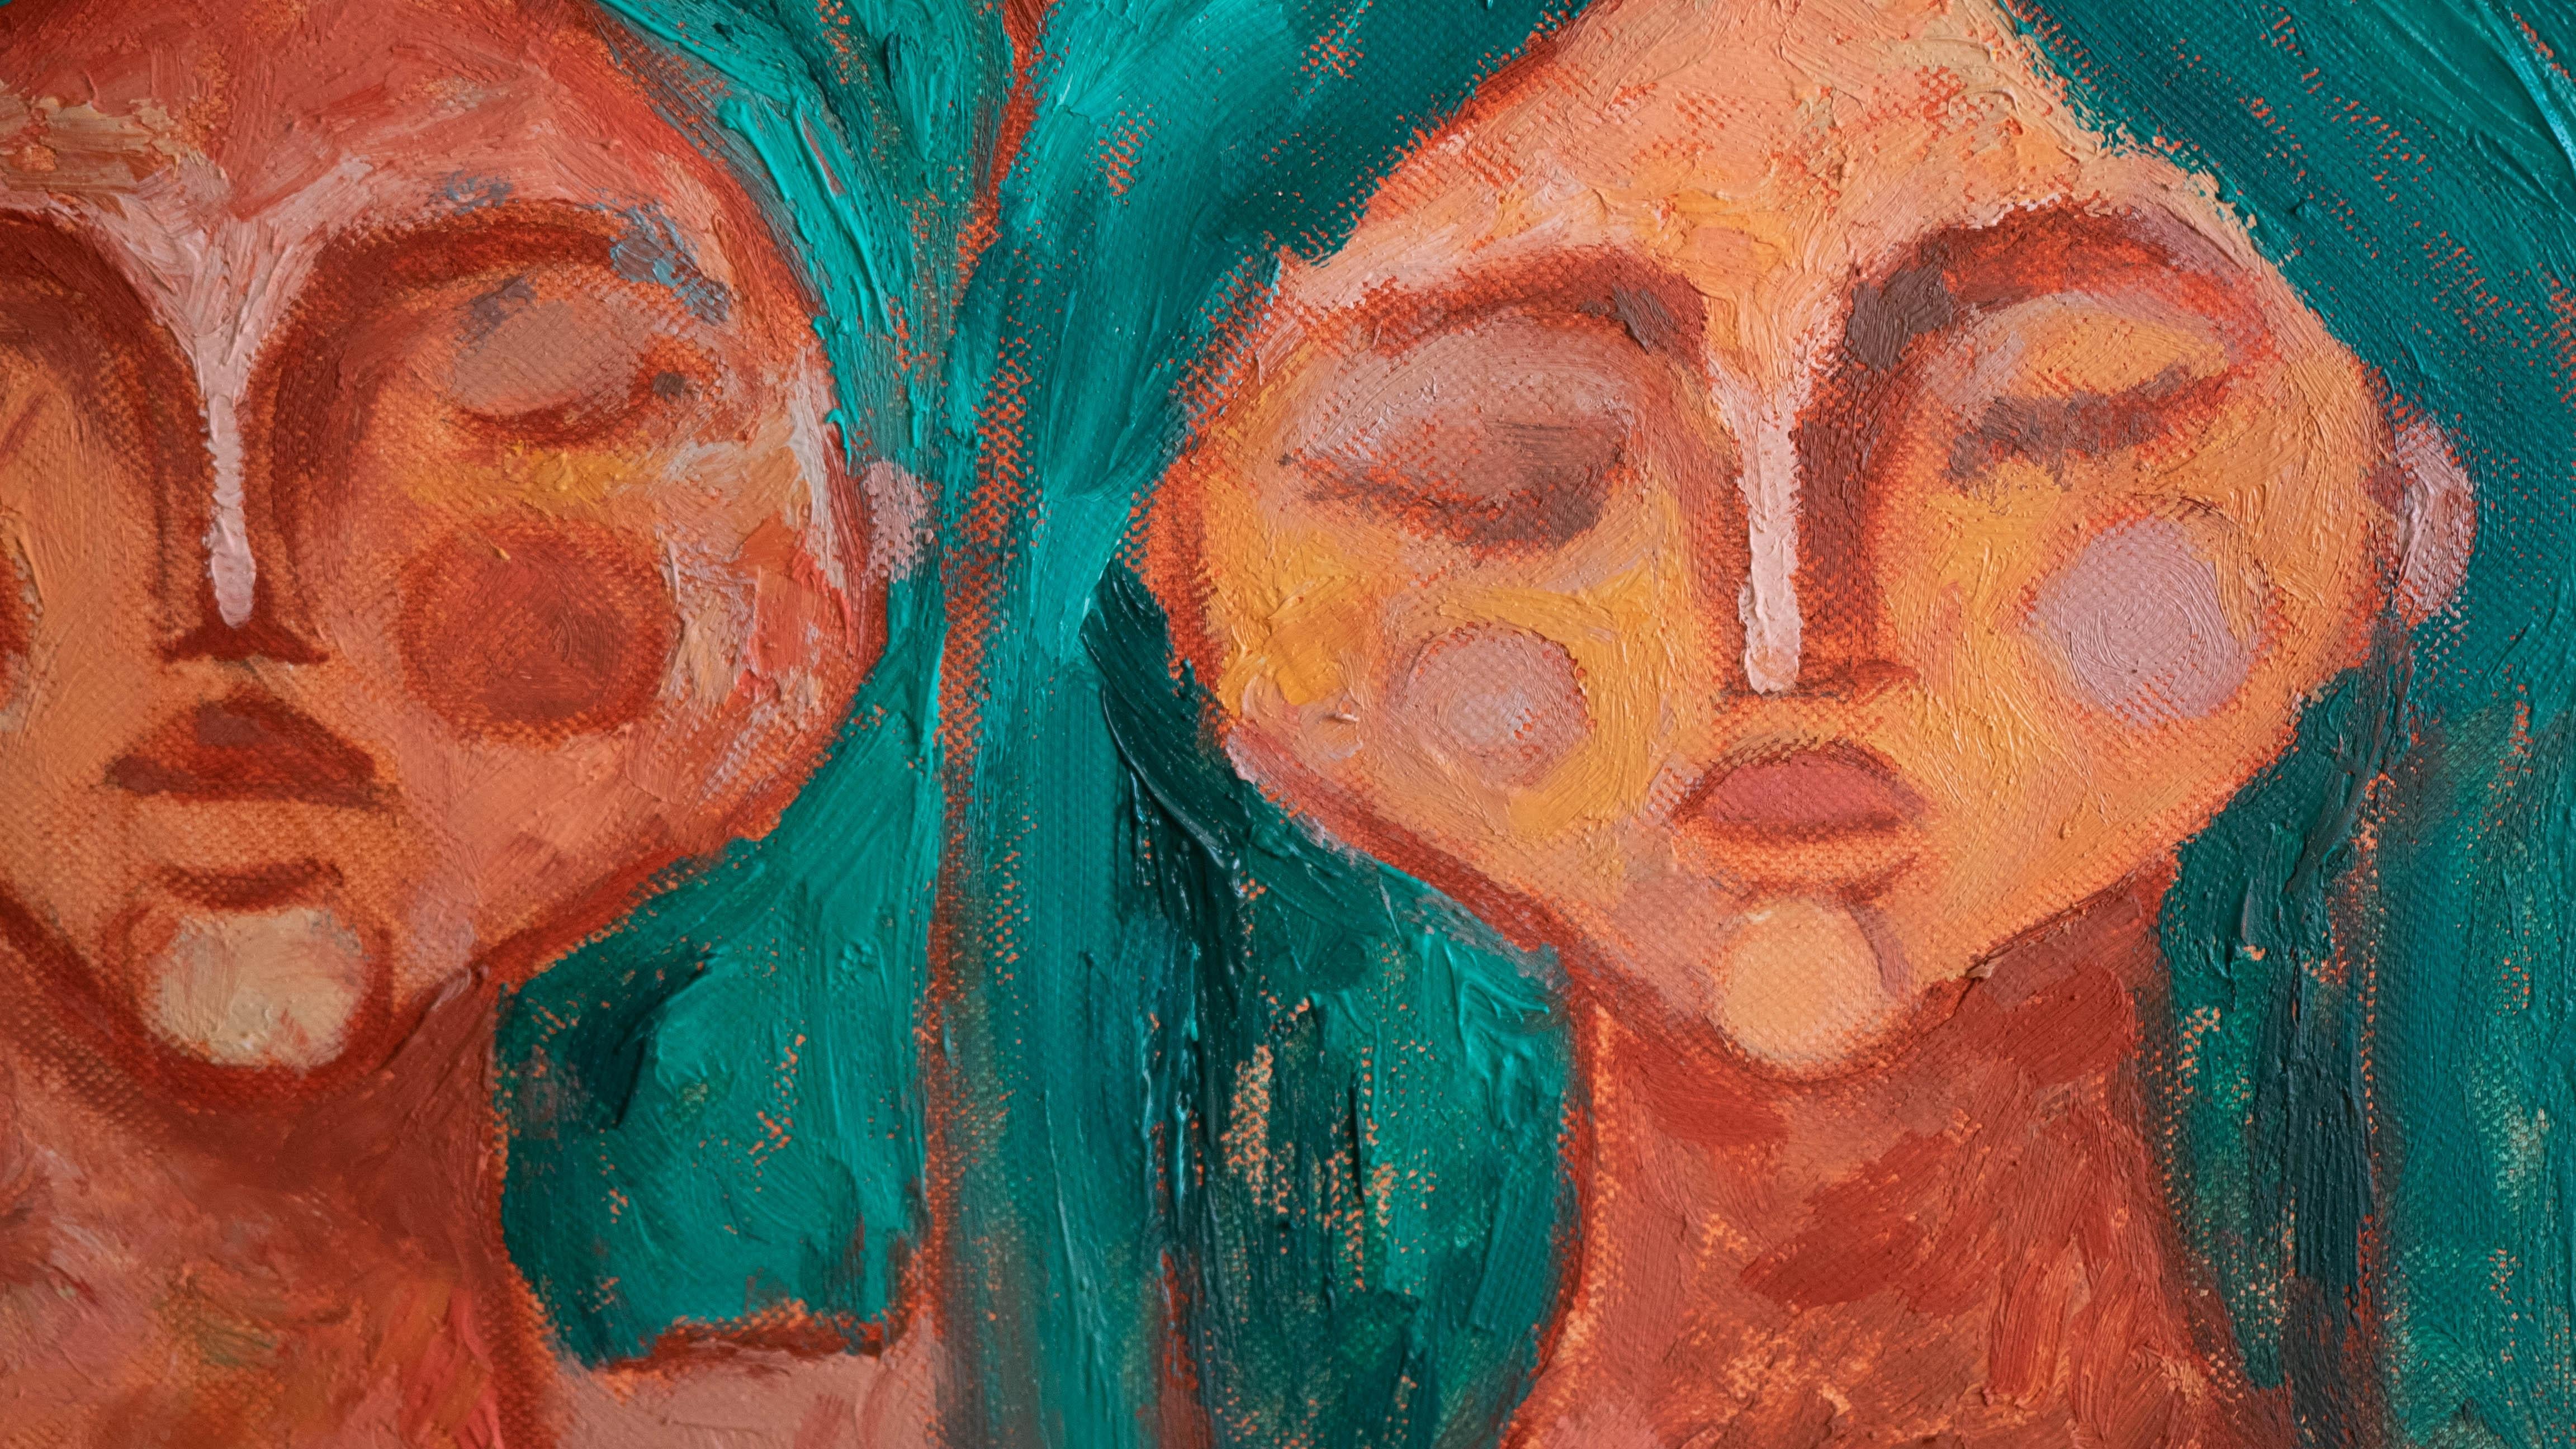 You rise me up - Orange Nude Painting by Dasha Pogodina